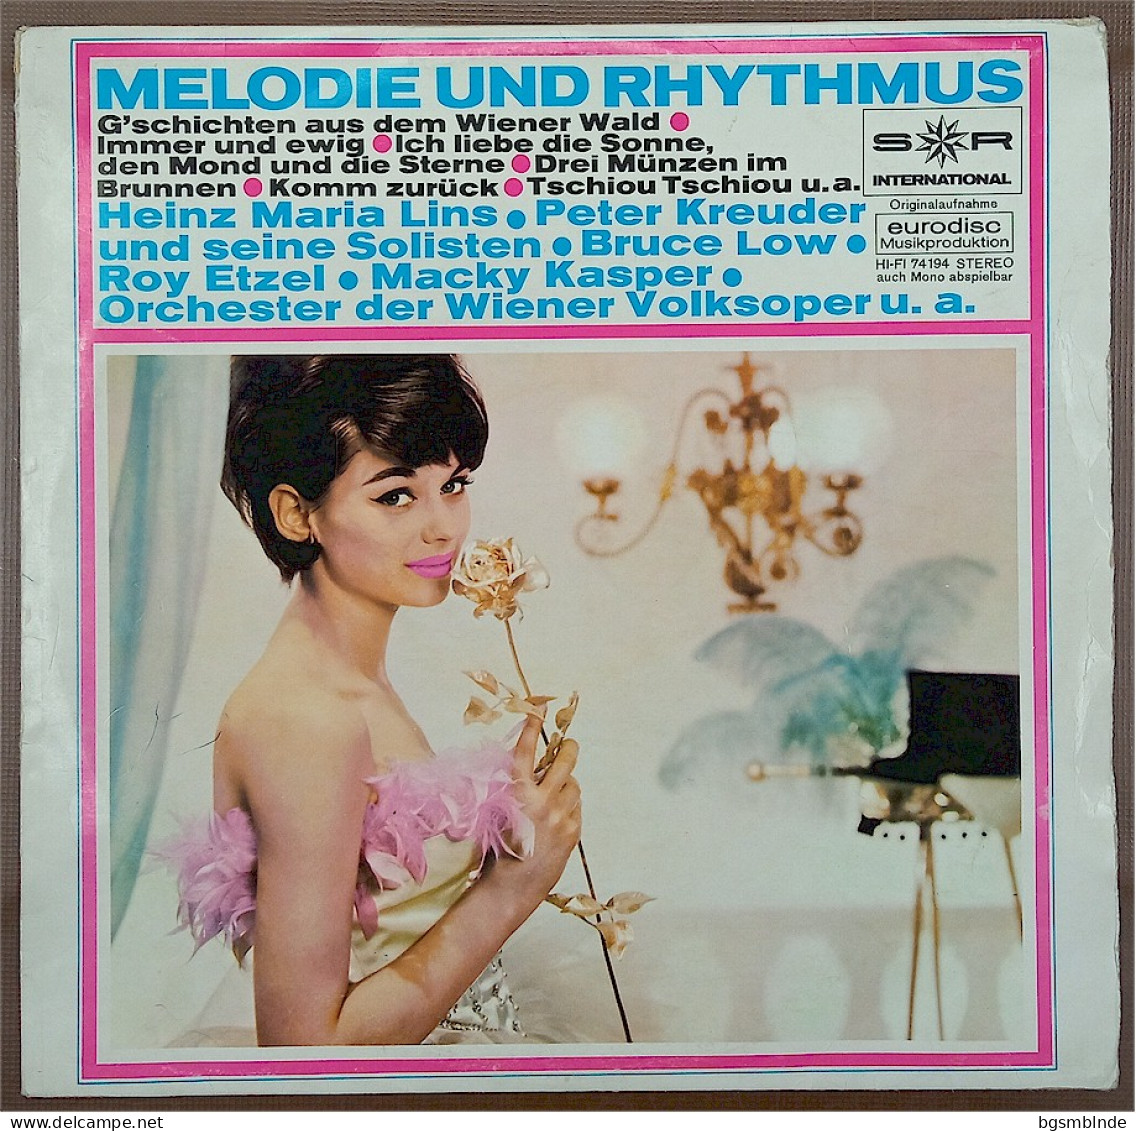 Melodie Und Rhytmus - G'schichten Aus Dem Wienerwald - Other - German Music